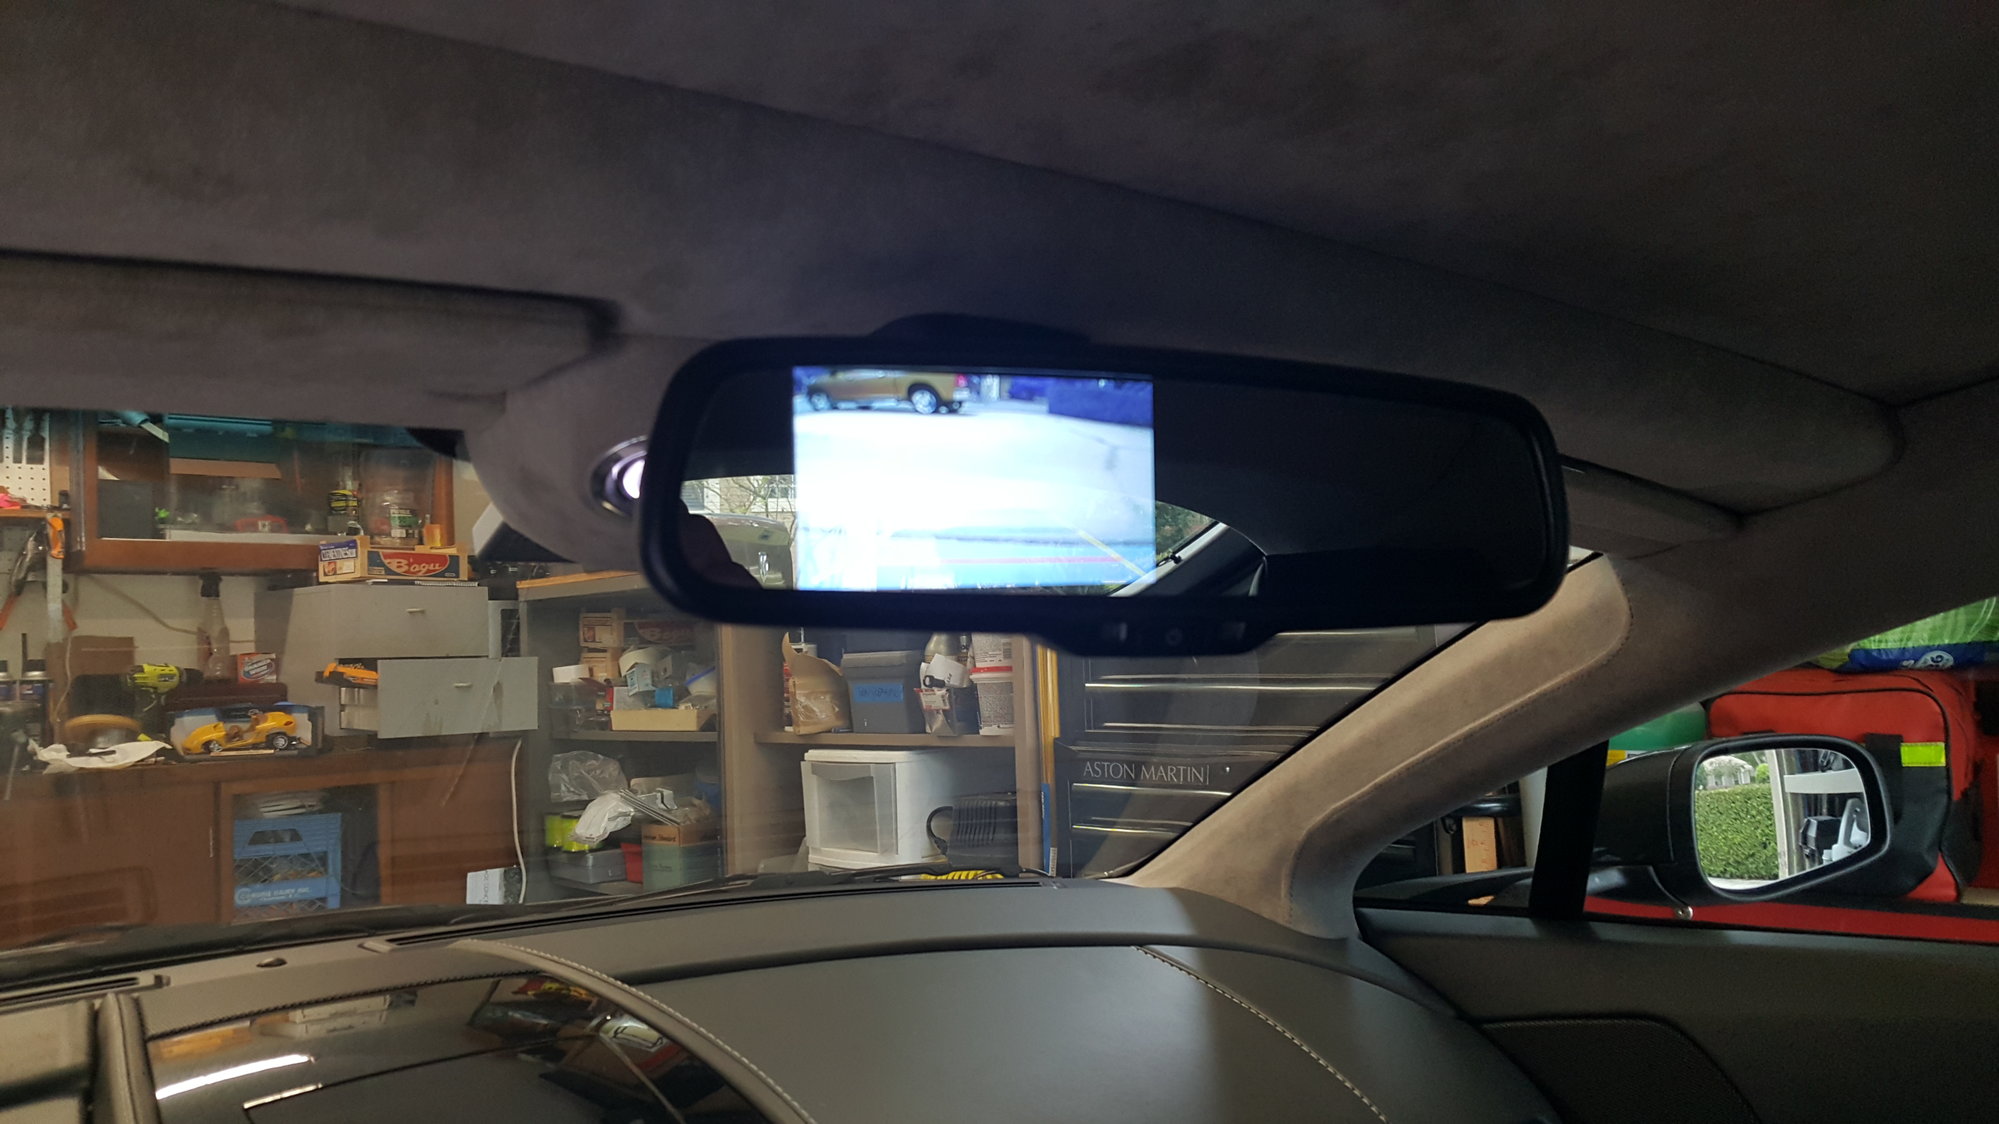 Vantage Rear View Mirror Back up Camera - 6SpeedOnline - Porsche Forum